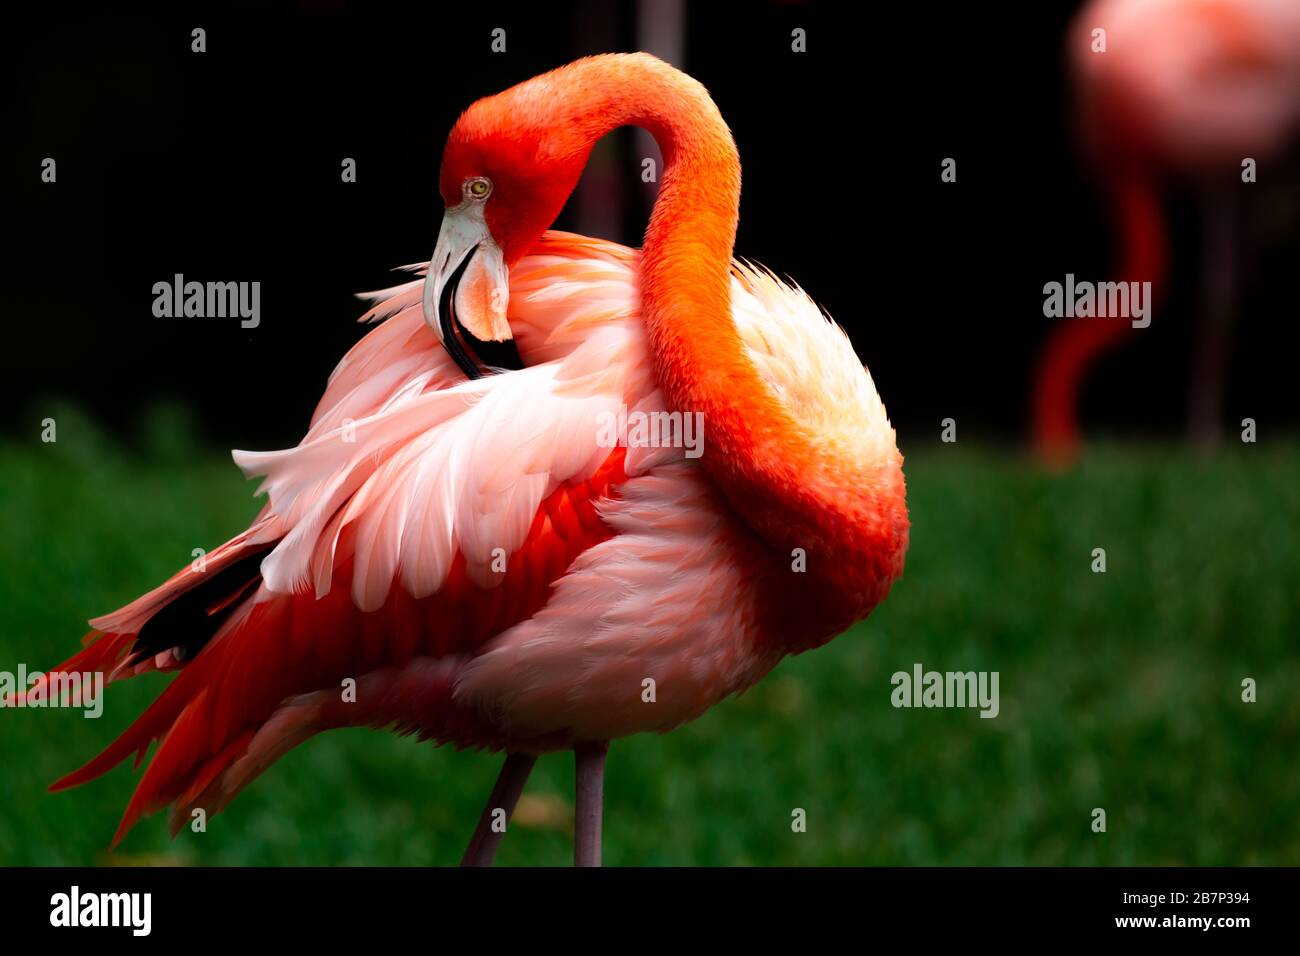 Farbige Landschaftsbilder von Flamingos, die in einem Naturreservat mit einer Beleuchtung mit geringer Lichtquelle fotografiert wurden. Stockfoto